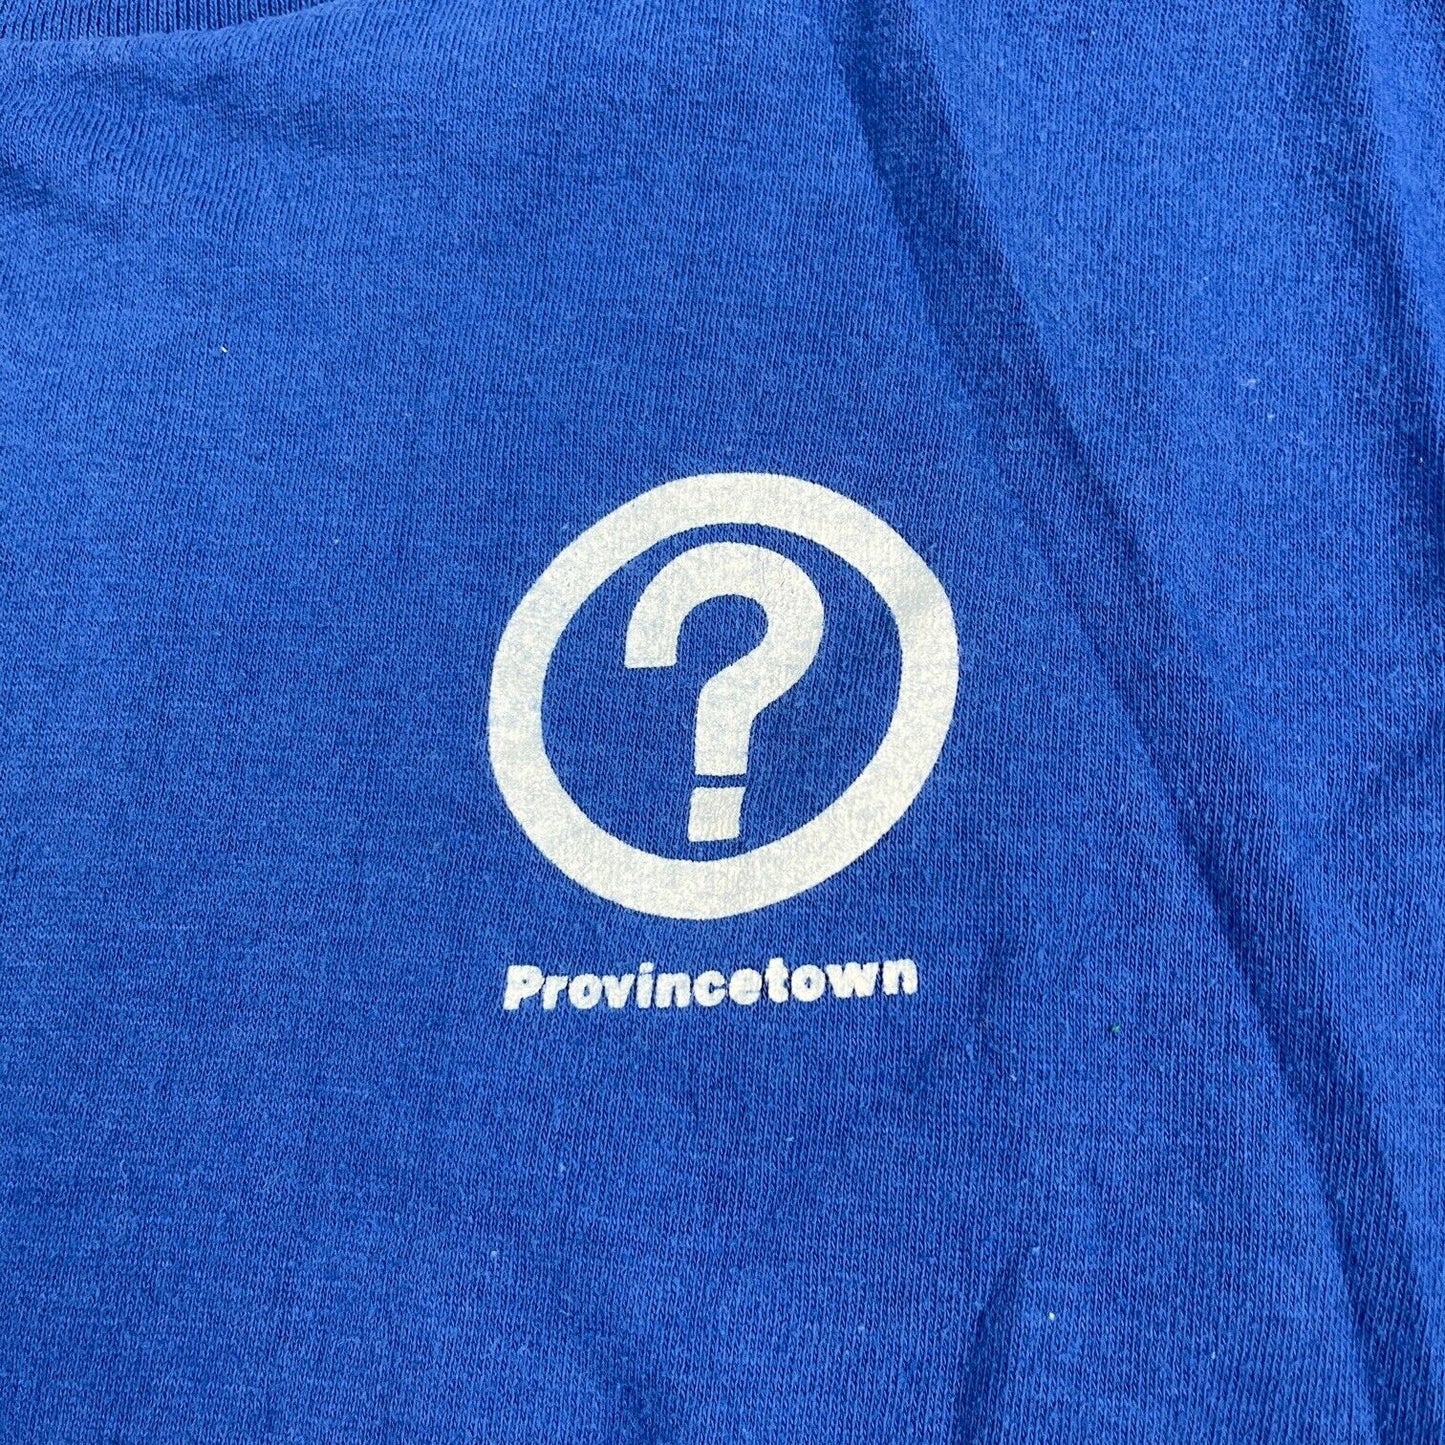 VINTAGE Provincetown Blue Single Stitch Shirt Adult Large Black Men 90s